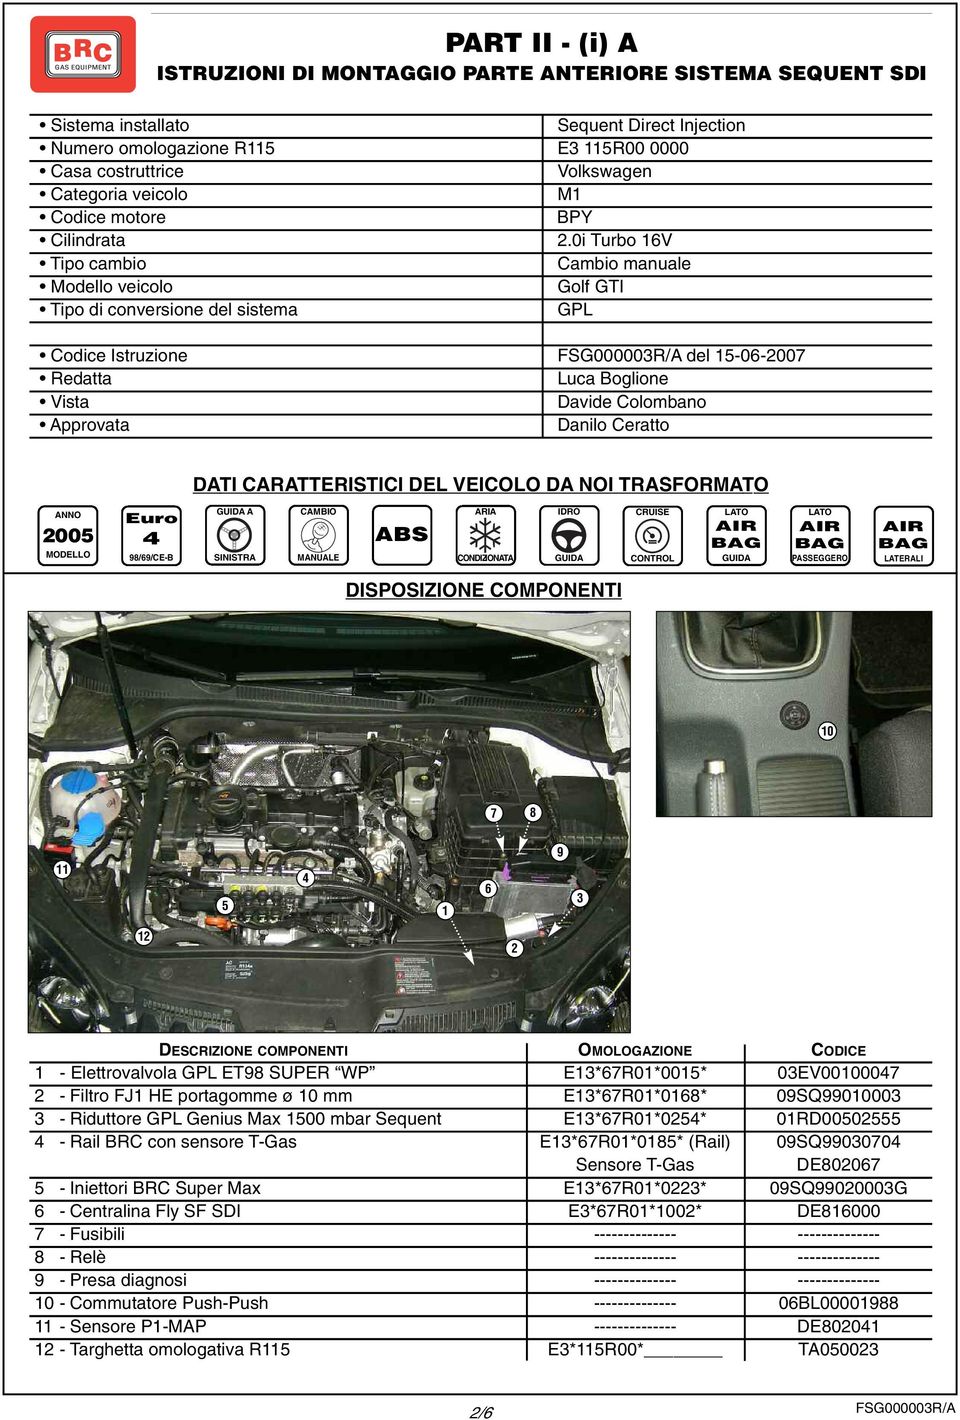 0i Turbo 16V Tipo cambio Cambio manuale Modello veicolo Golf GTI Tipo di conversione del sistema GPL Codice Istruzione FSG00000R/A del 15-06-2007 Redatta Luca Boglione Vista Davide Colombano